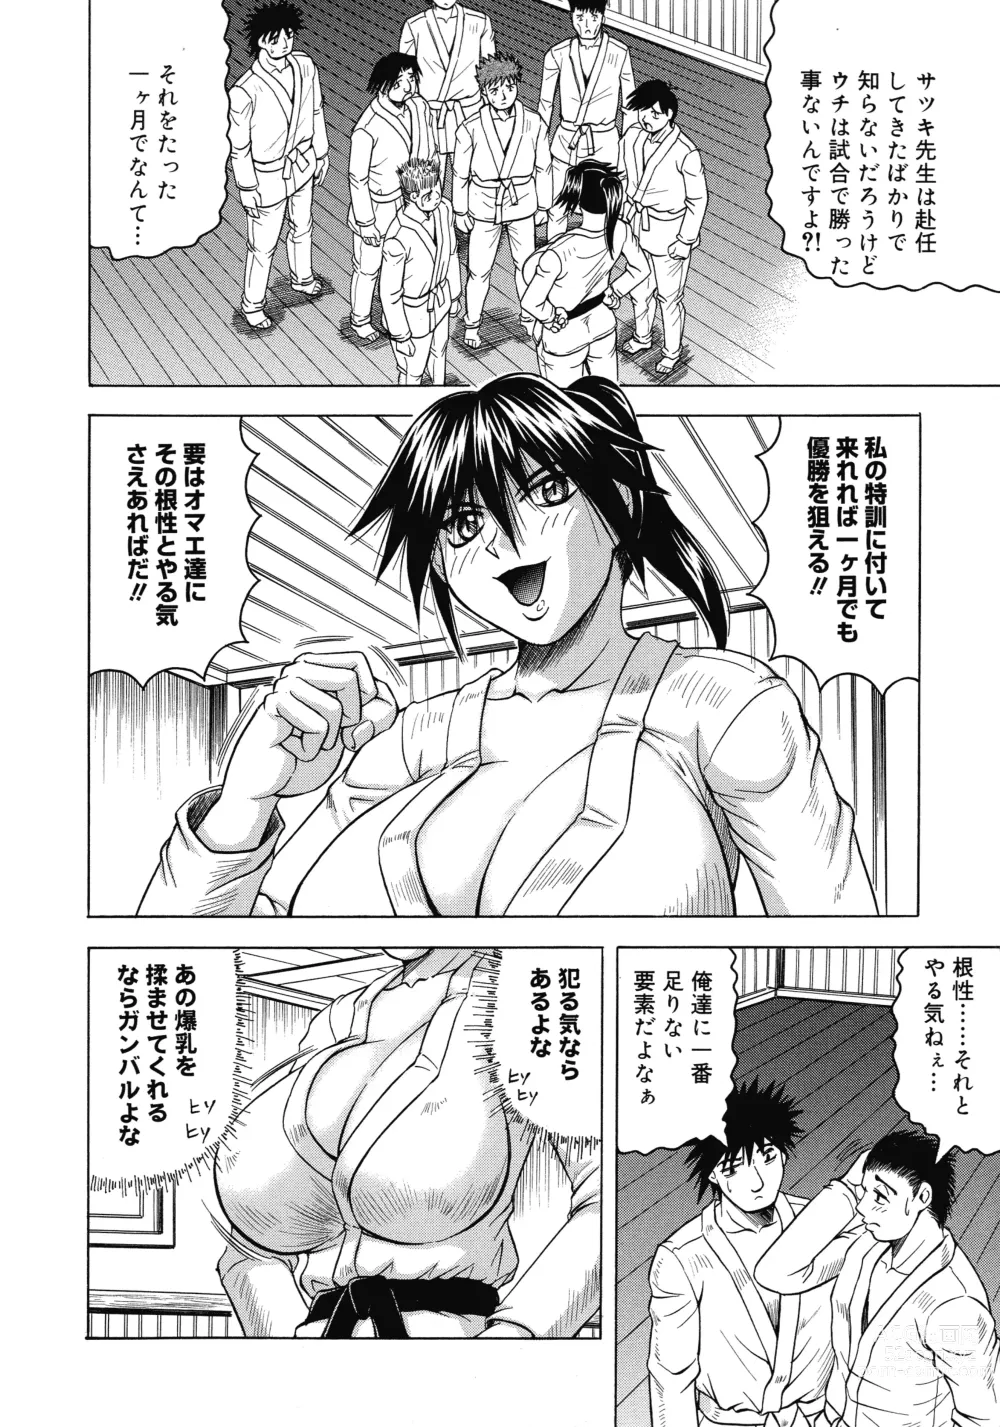 Page 10 of manga Ichigeki Nousatsu Satsuki-sensei